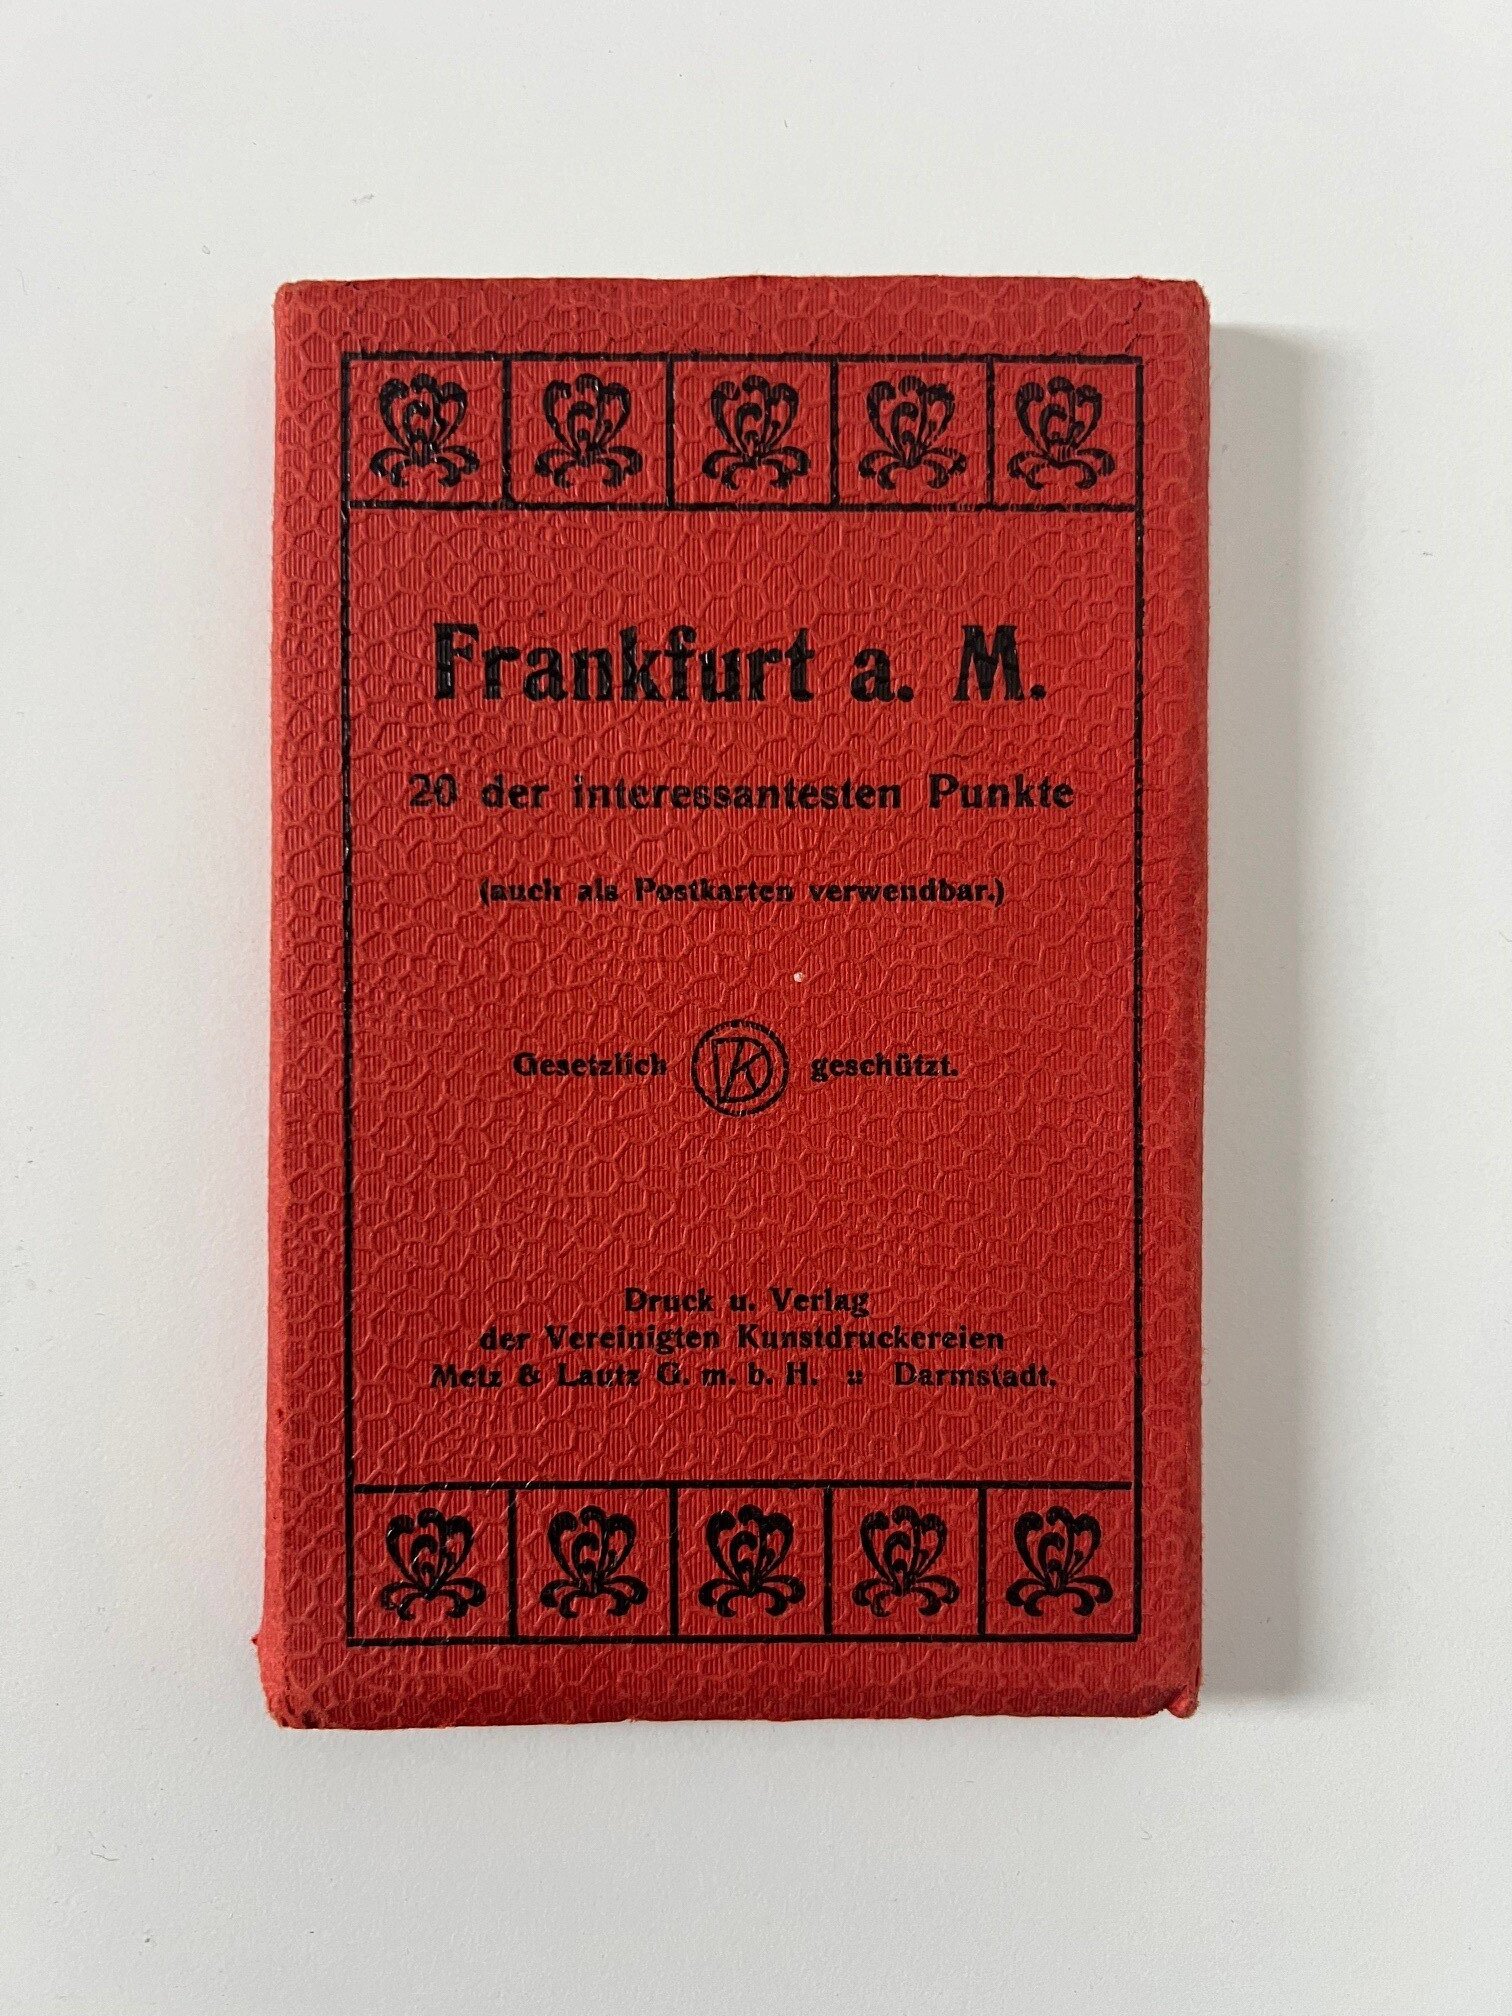 Metz & Lautz, Frankfurt a. M., 20 der interessantesten Punkte auch als Postkarten verwendbar, Leporello mit 20 Ansichtskarten, ca. 1920. (Taunus-Rhein-Main - Regionalgeschichtliche Sammlung Dr. Stefan Naas CC BY-NC-SA)